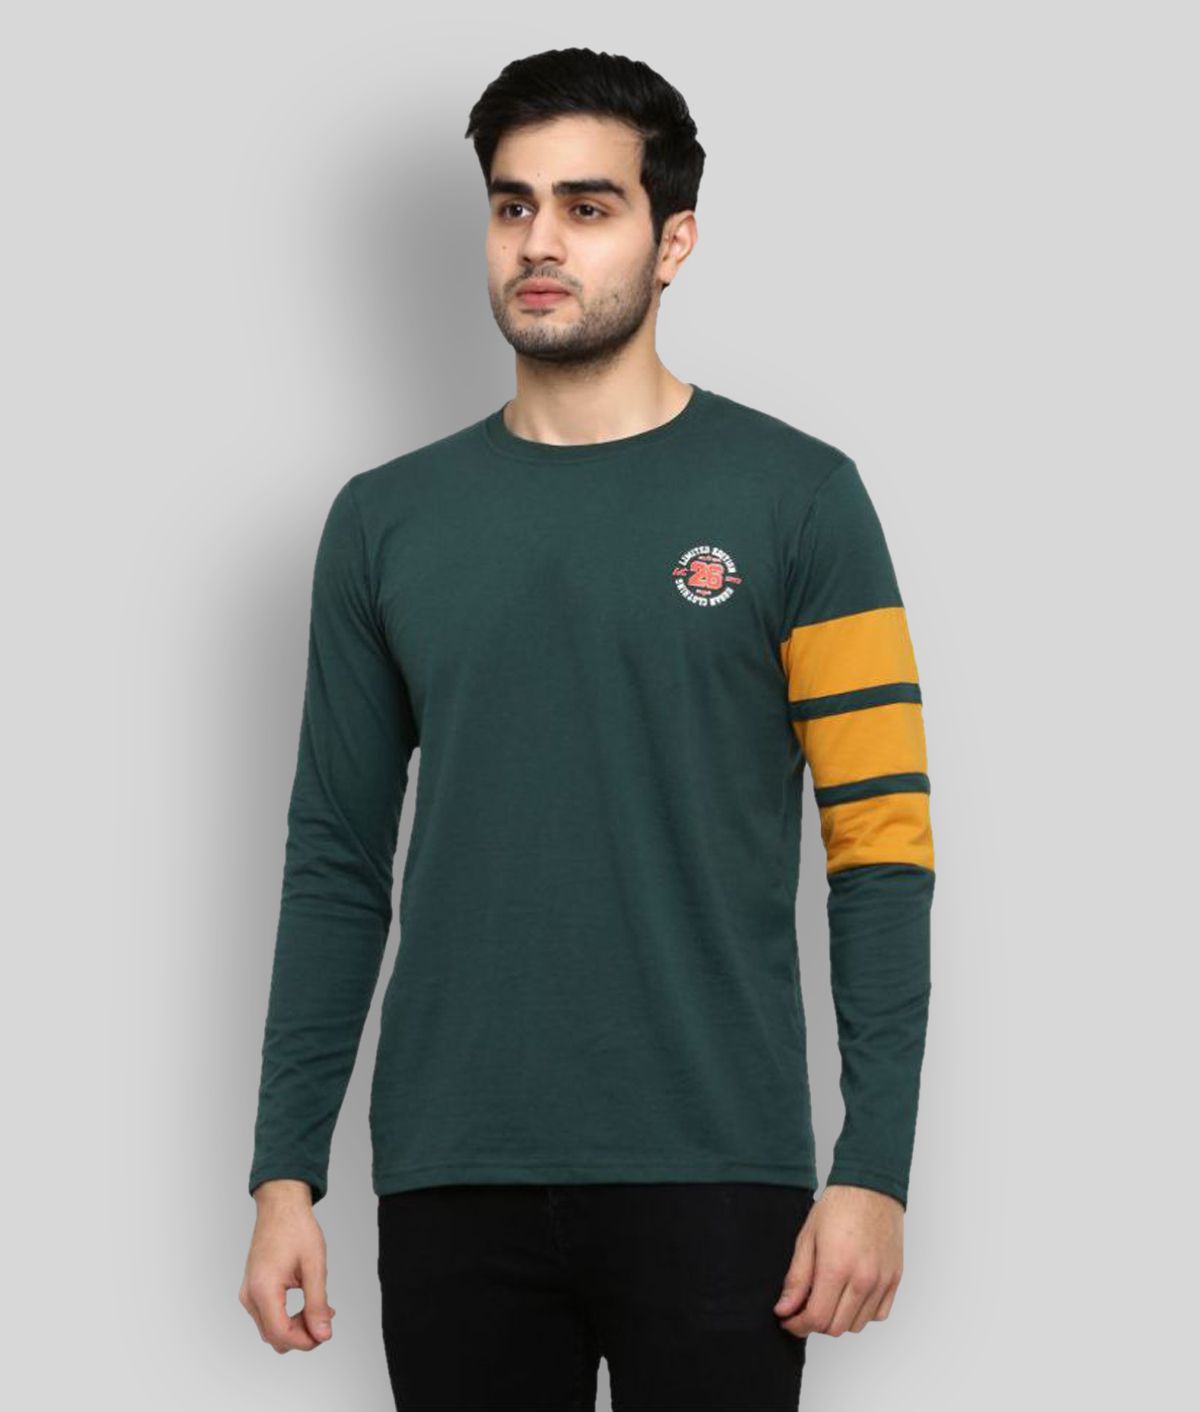     			GENTINO - Green Cotton Blend Regular Fit Men's T-Shirt ( Pack of 1 )